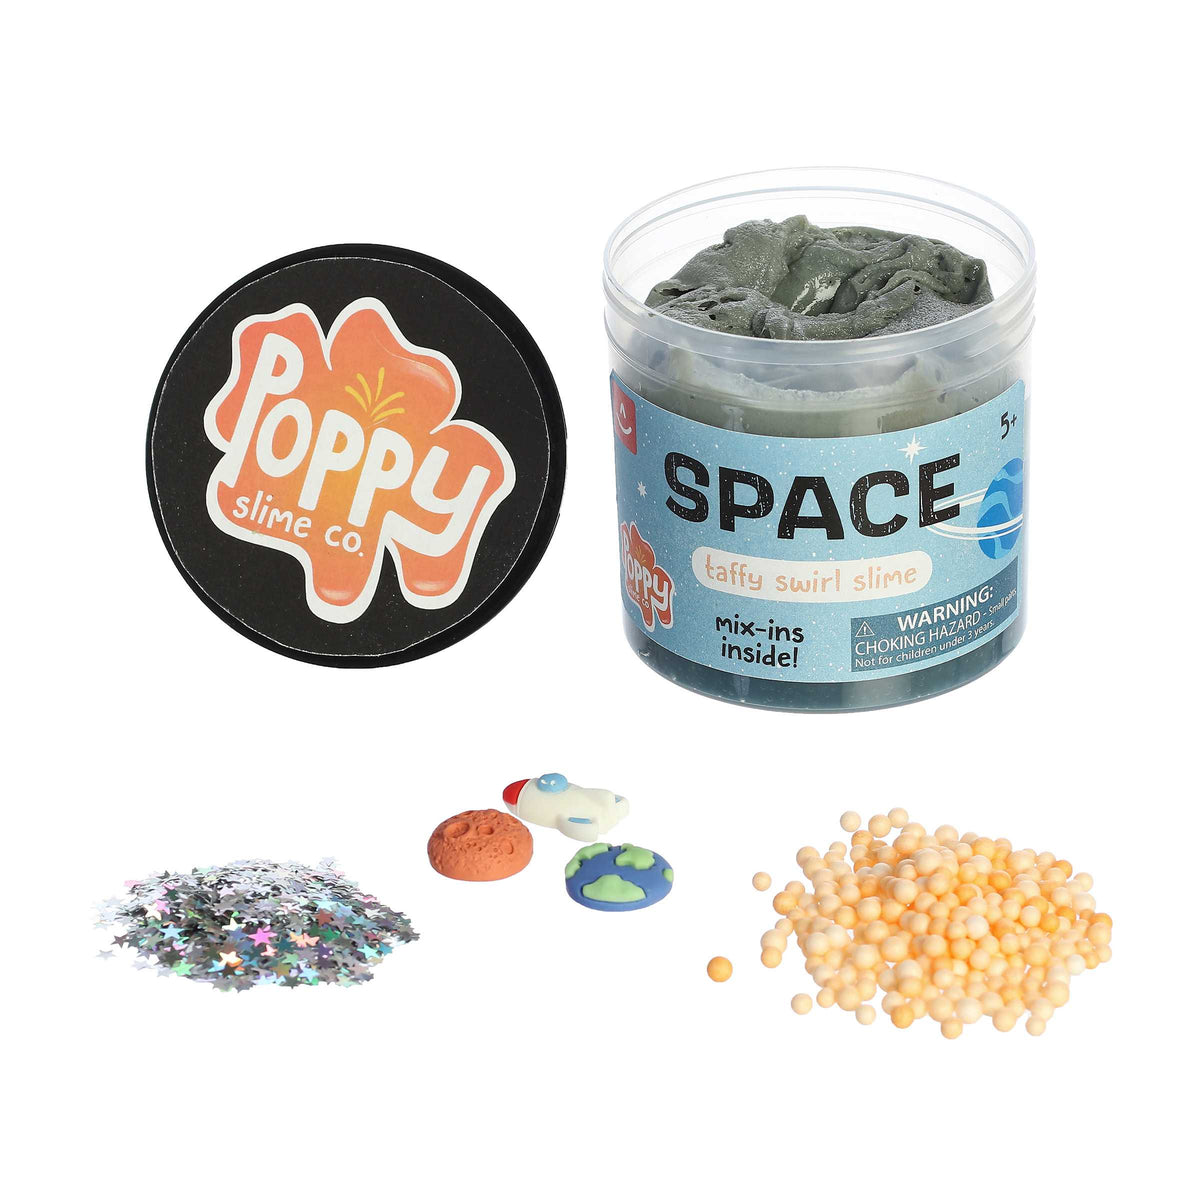 Aurora® Toys - Poppy Slime Co.™ - Space Slime